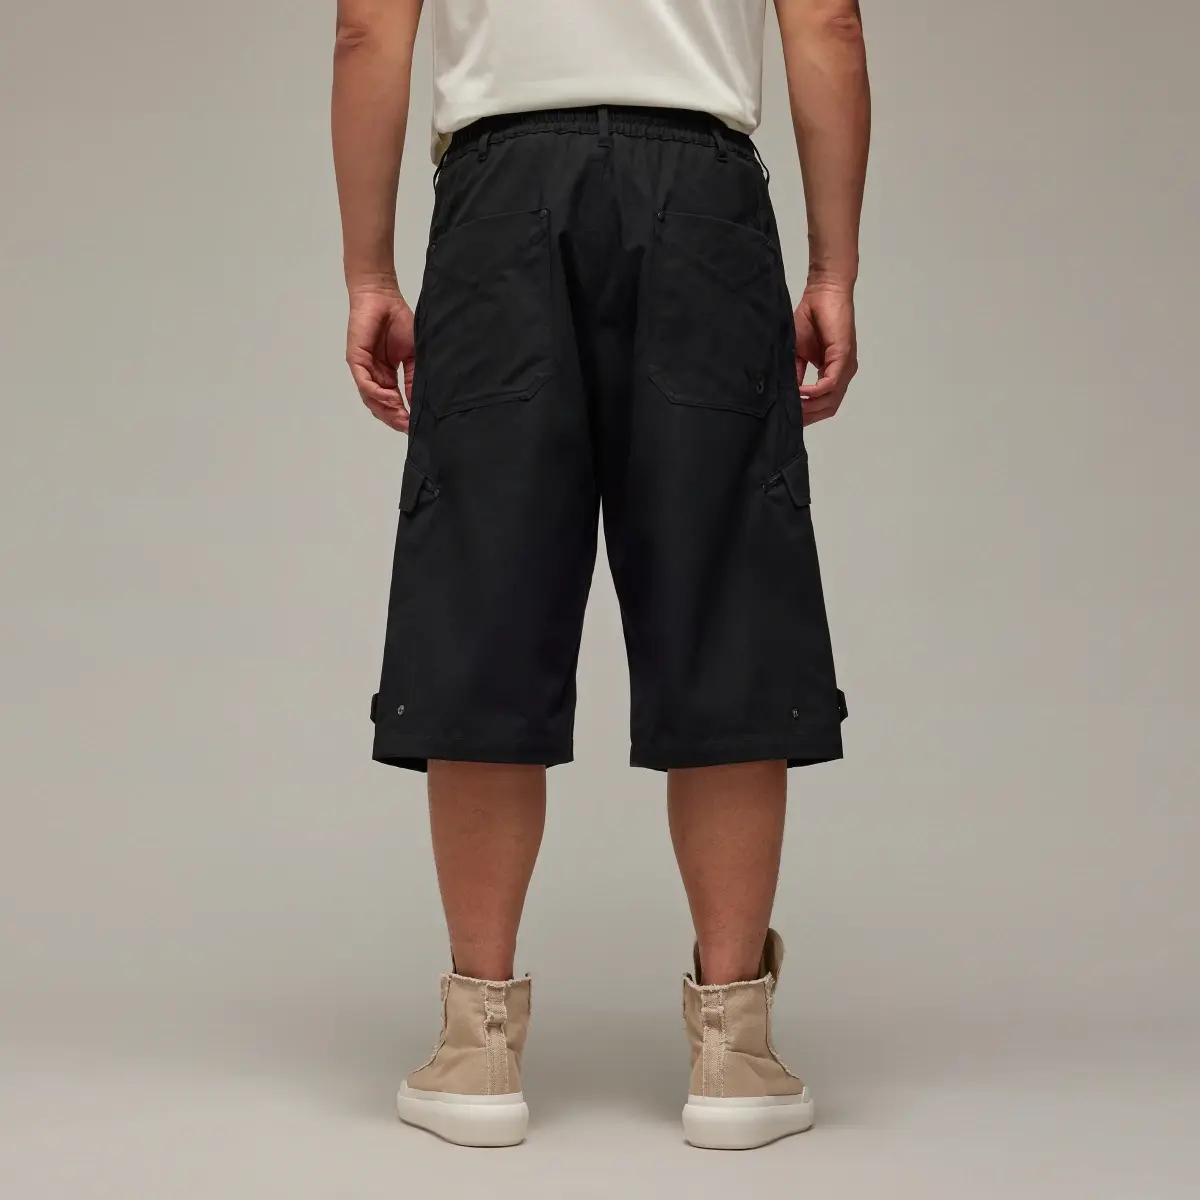 Adidas Y-3 Workwear Shorts. 3